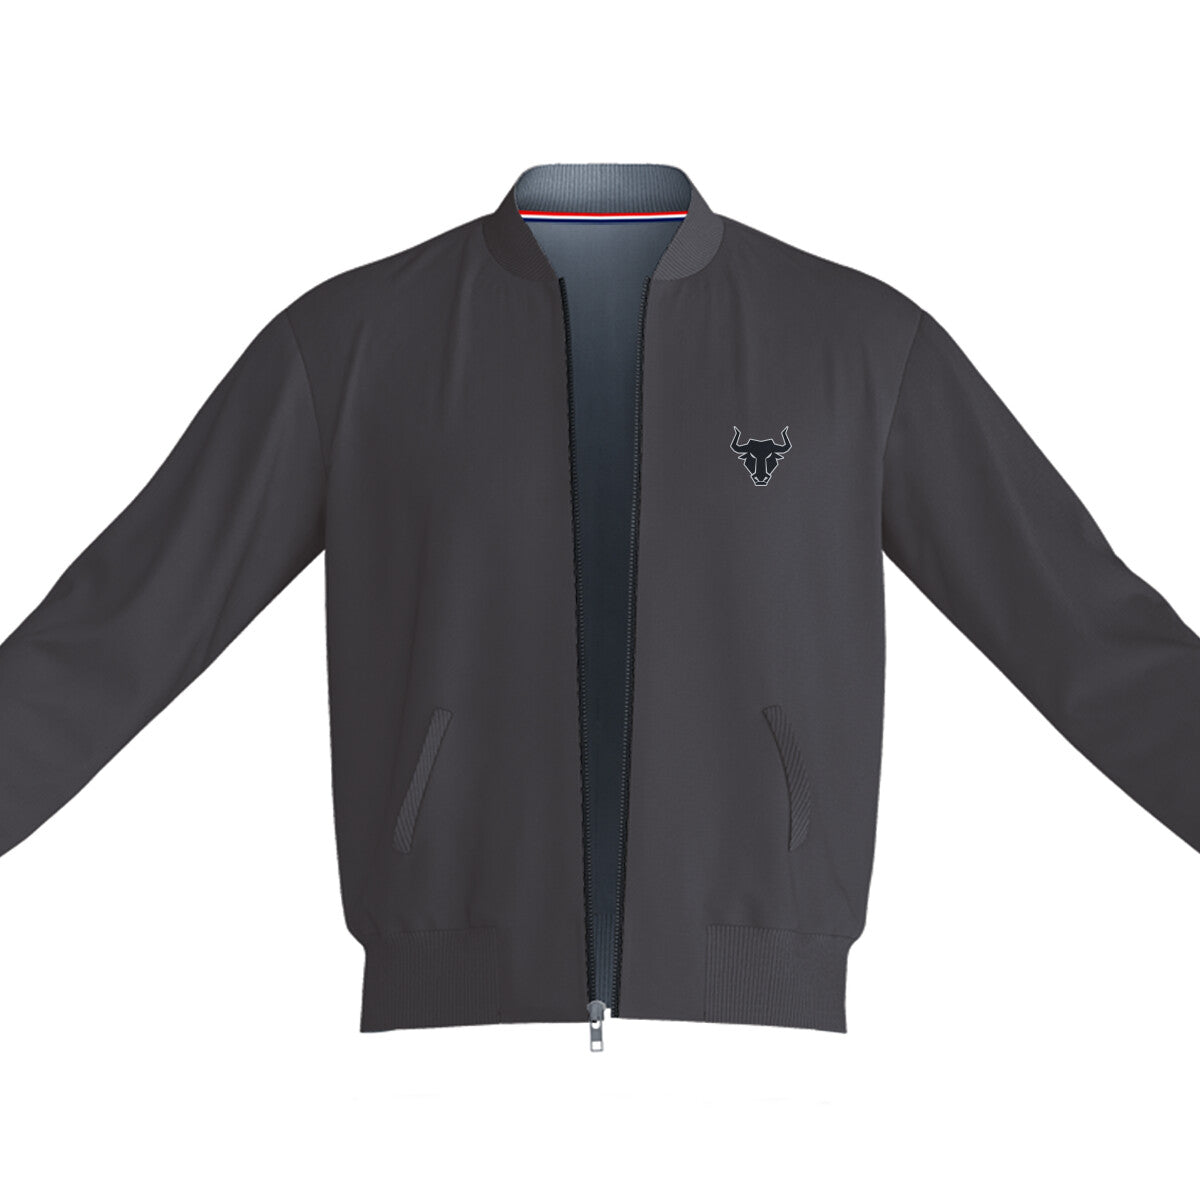 Unisex plain streetwear Jacket